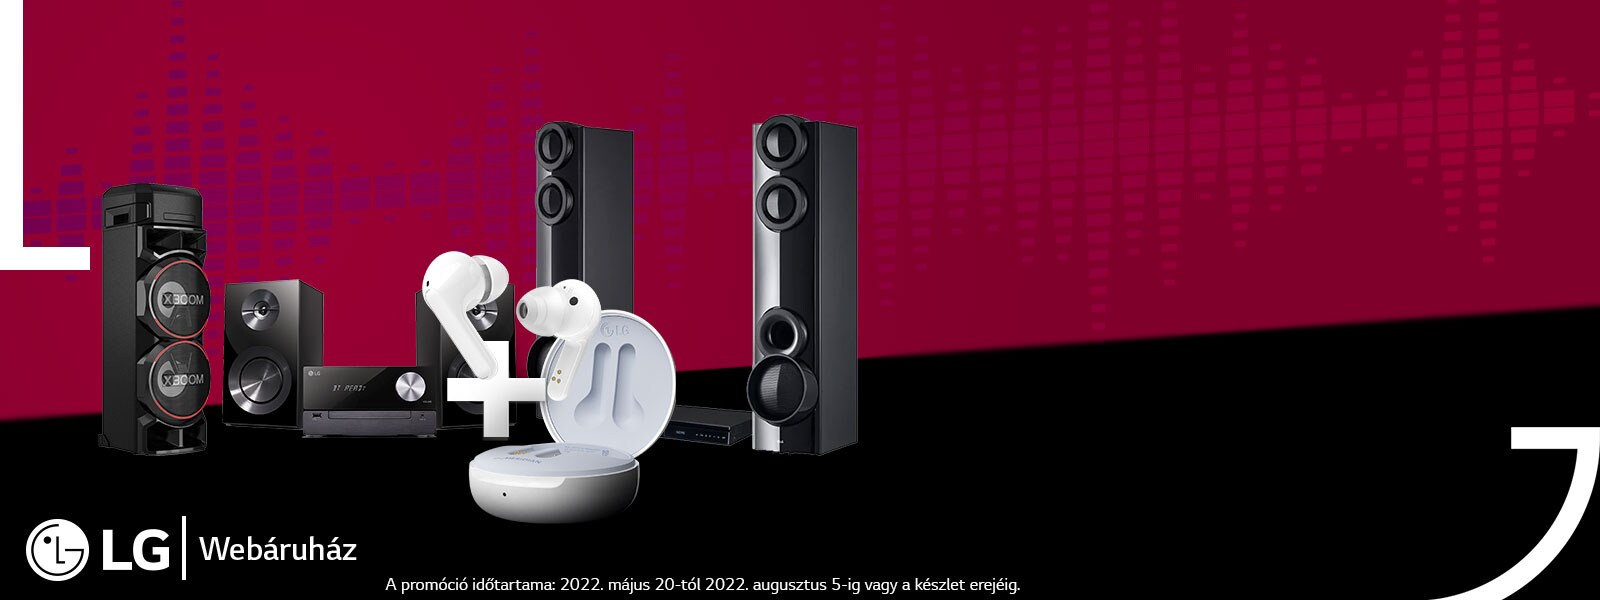 LG audio termékek most ráadás Bluetooth fülhallgatóval!